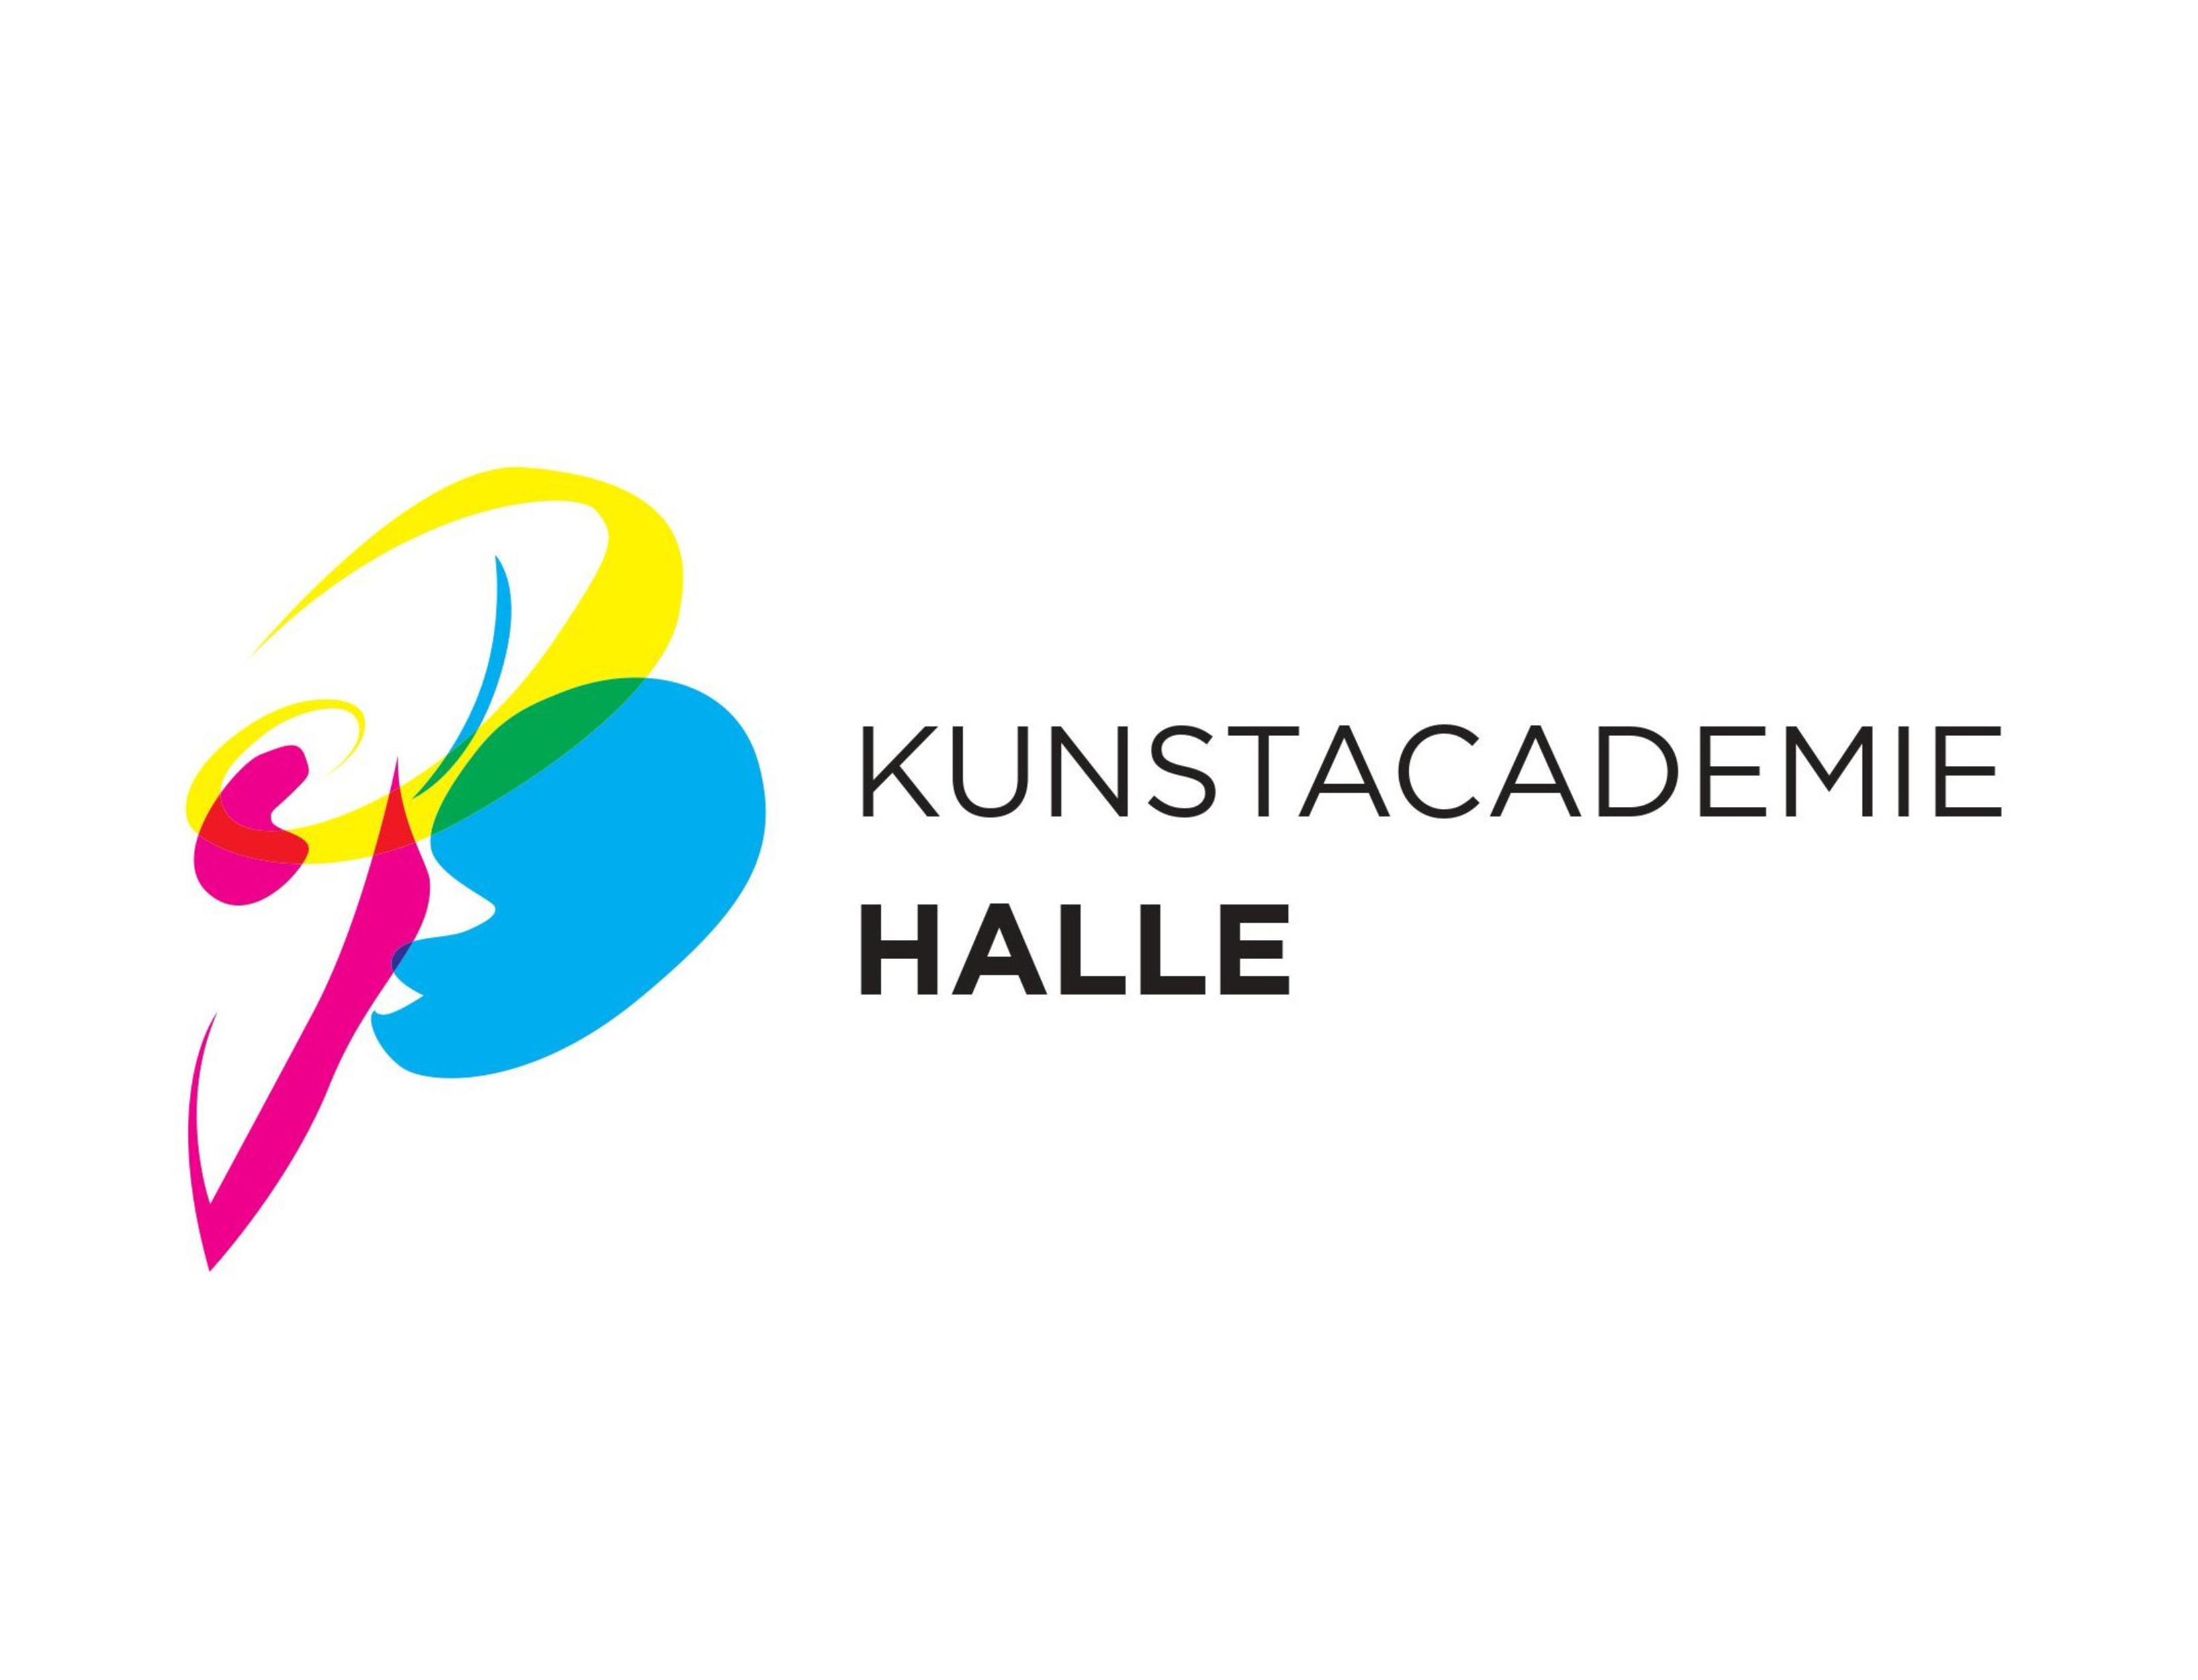 Kunstacademie Halle